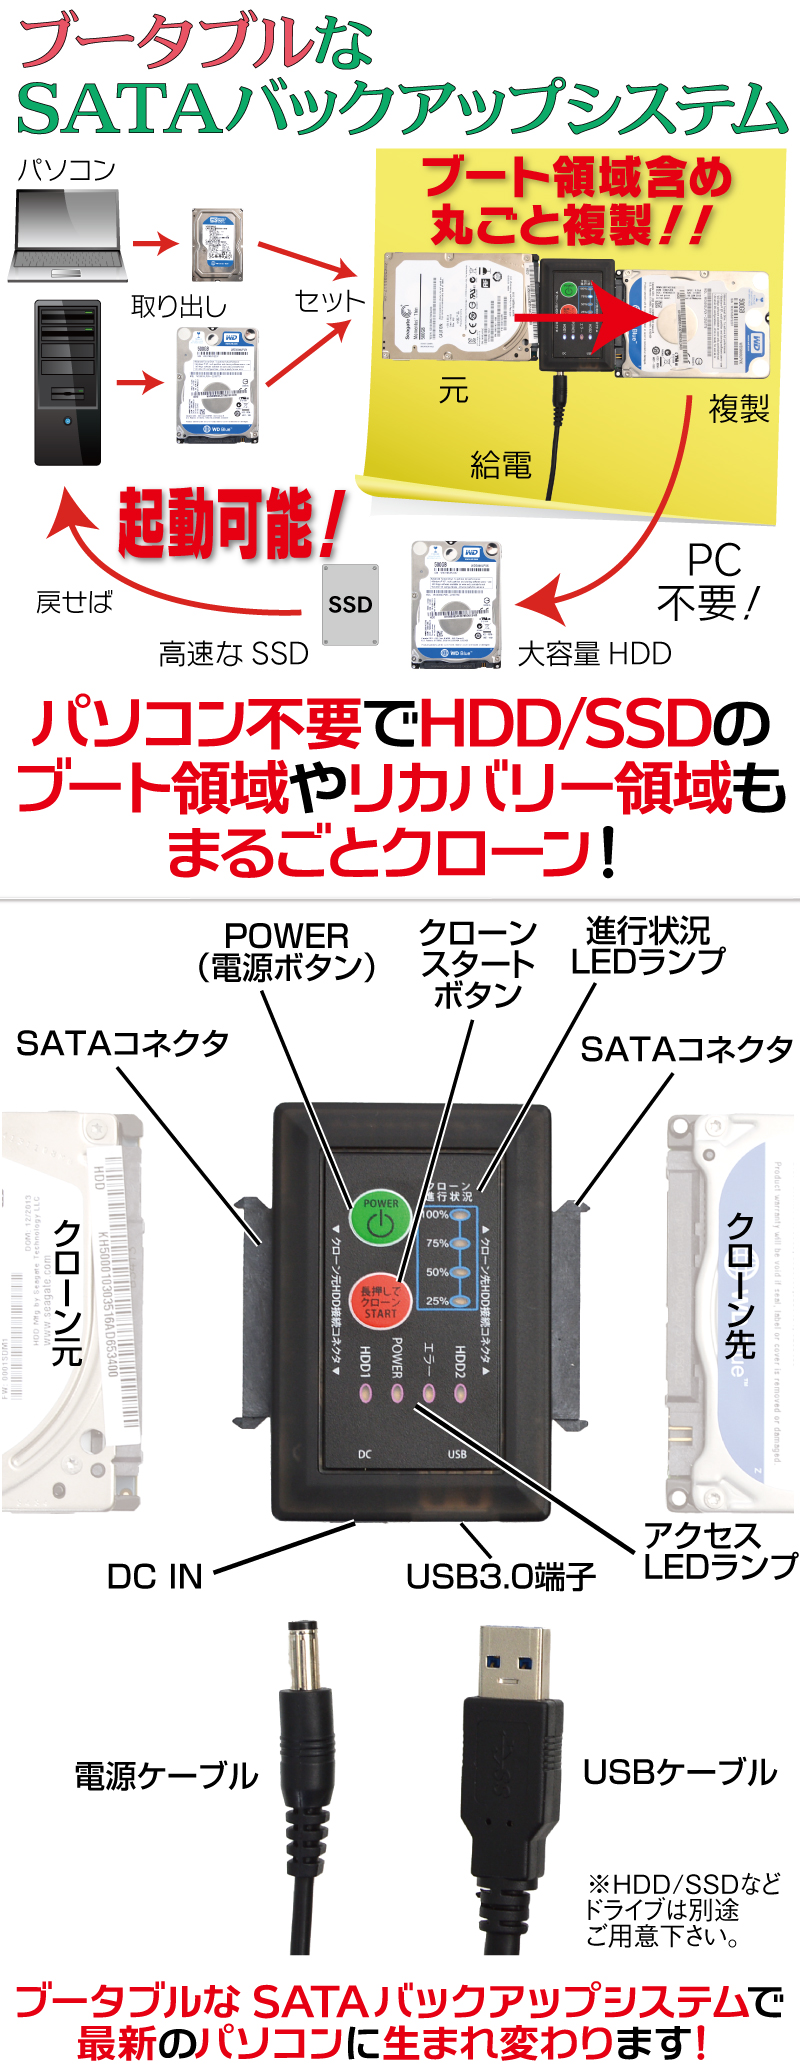 ブータブルなSATAバックアップシステム パソコン不要,HDD/SSD,ブート領域,リカバリー領域,まるごとクローン,2台のHDD/SSD,外付けUSB3.0ドライブ,接続